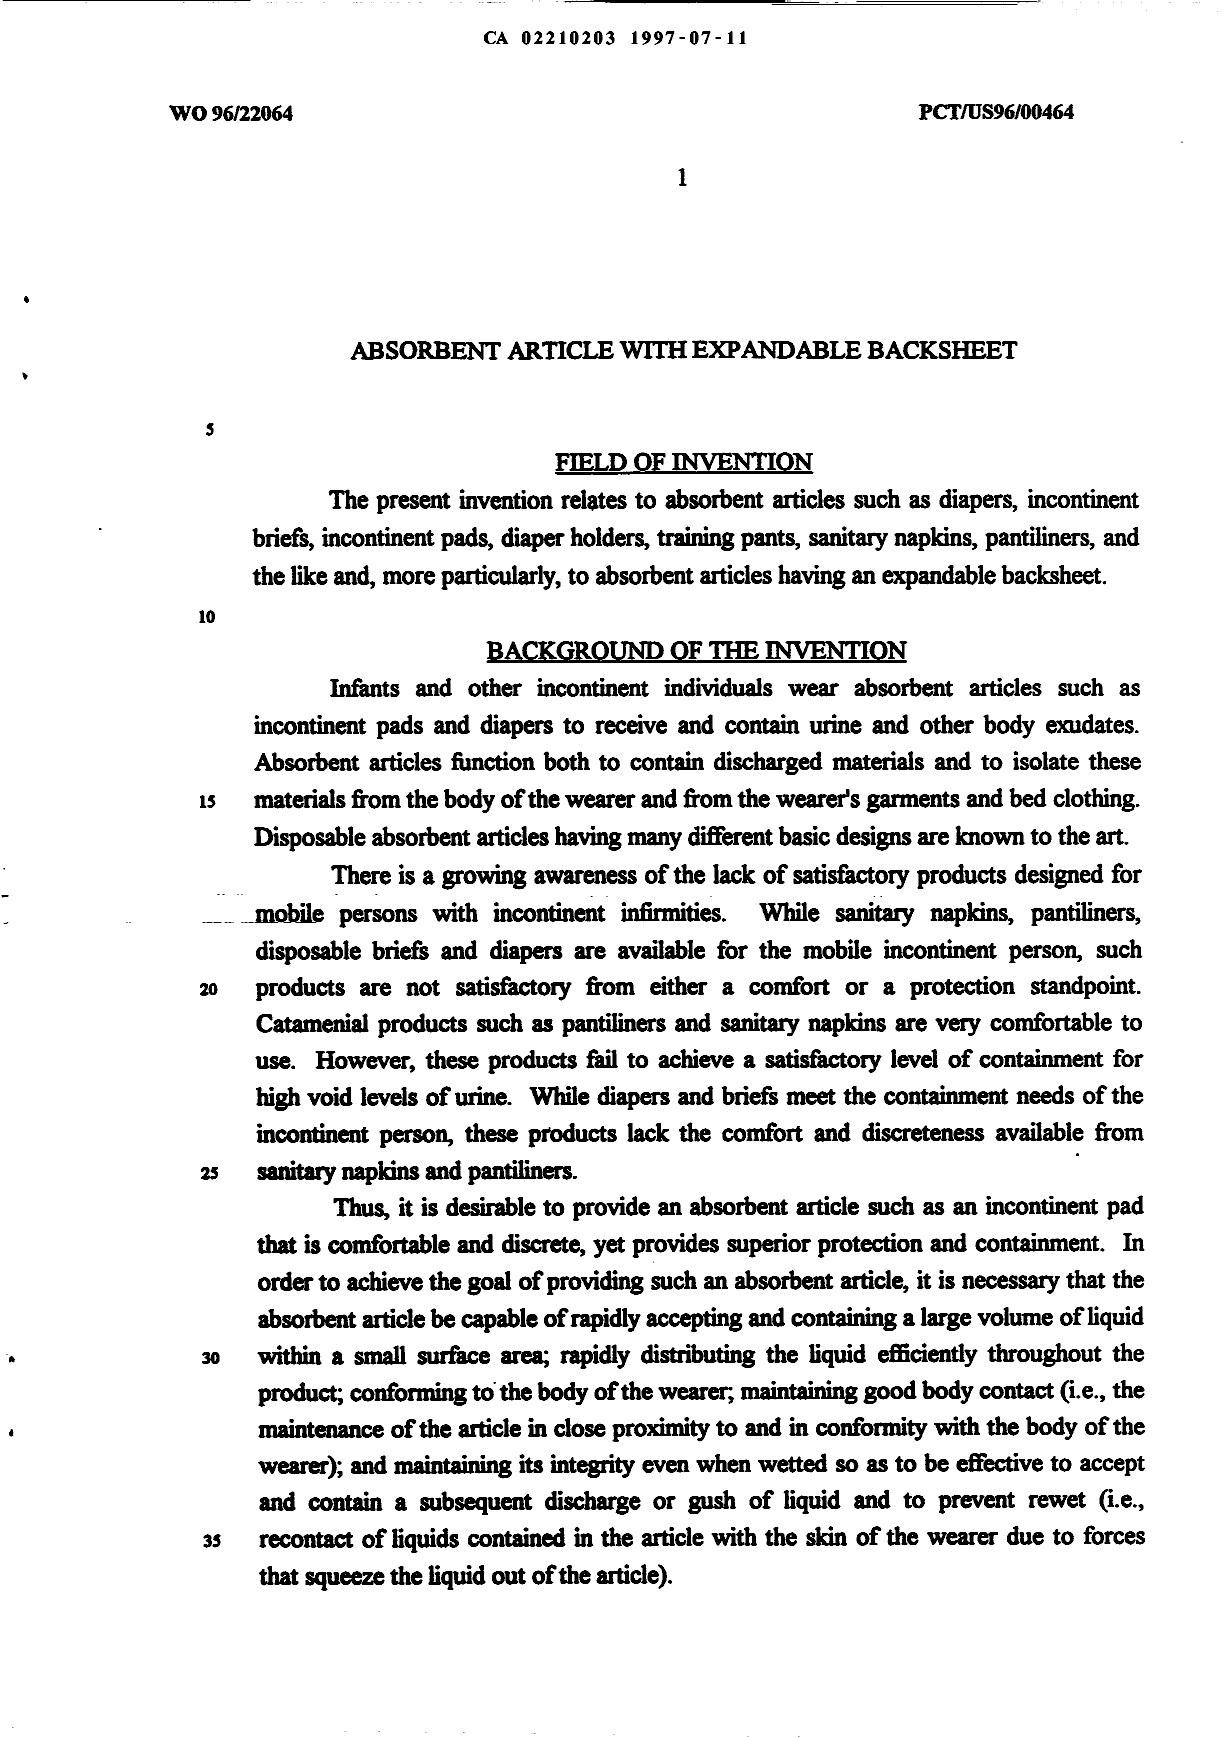 Canadian Patent Document 2210203. Description 20000308. Image 1 of 12